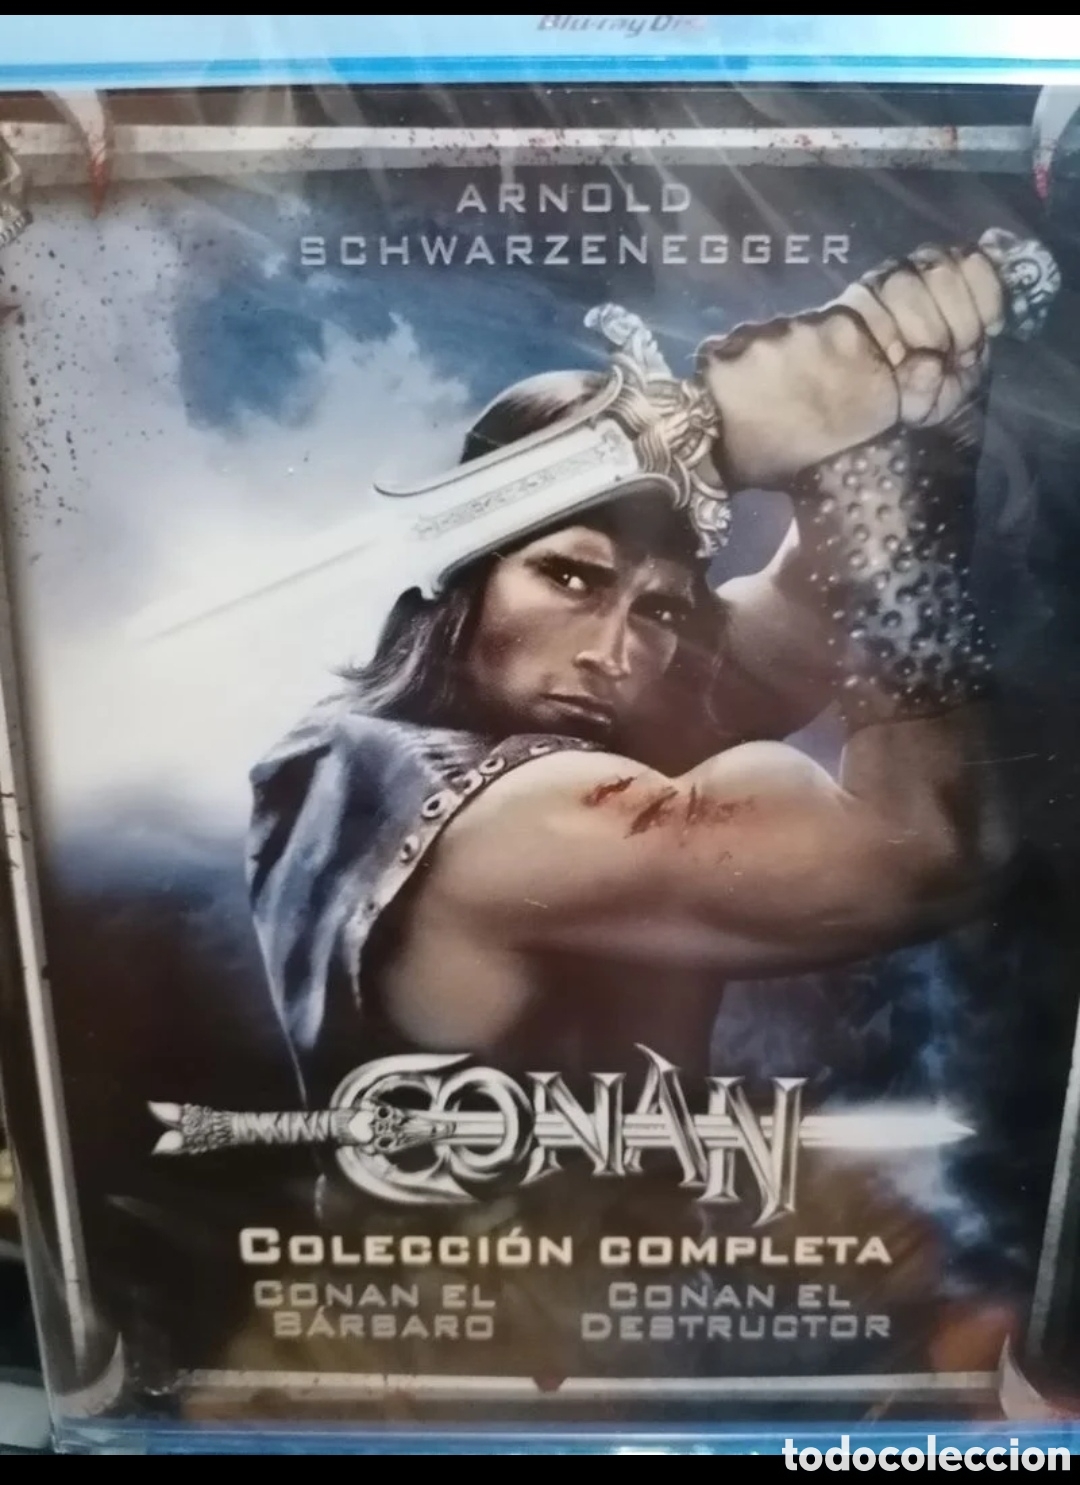 Conan (Blu-ray) Pack 2 peliculas: Conan El Barbaro / Conan El Destructor [ Blu-ray]